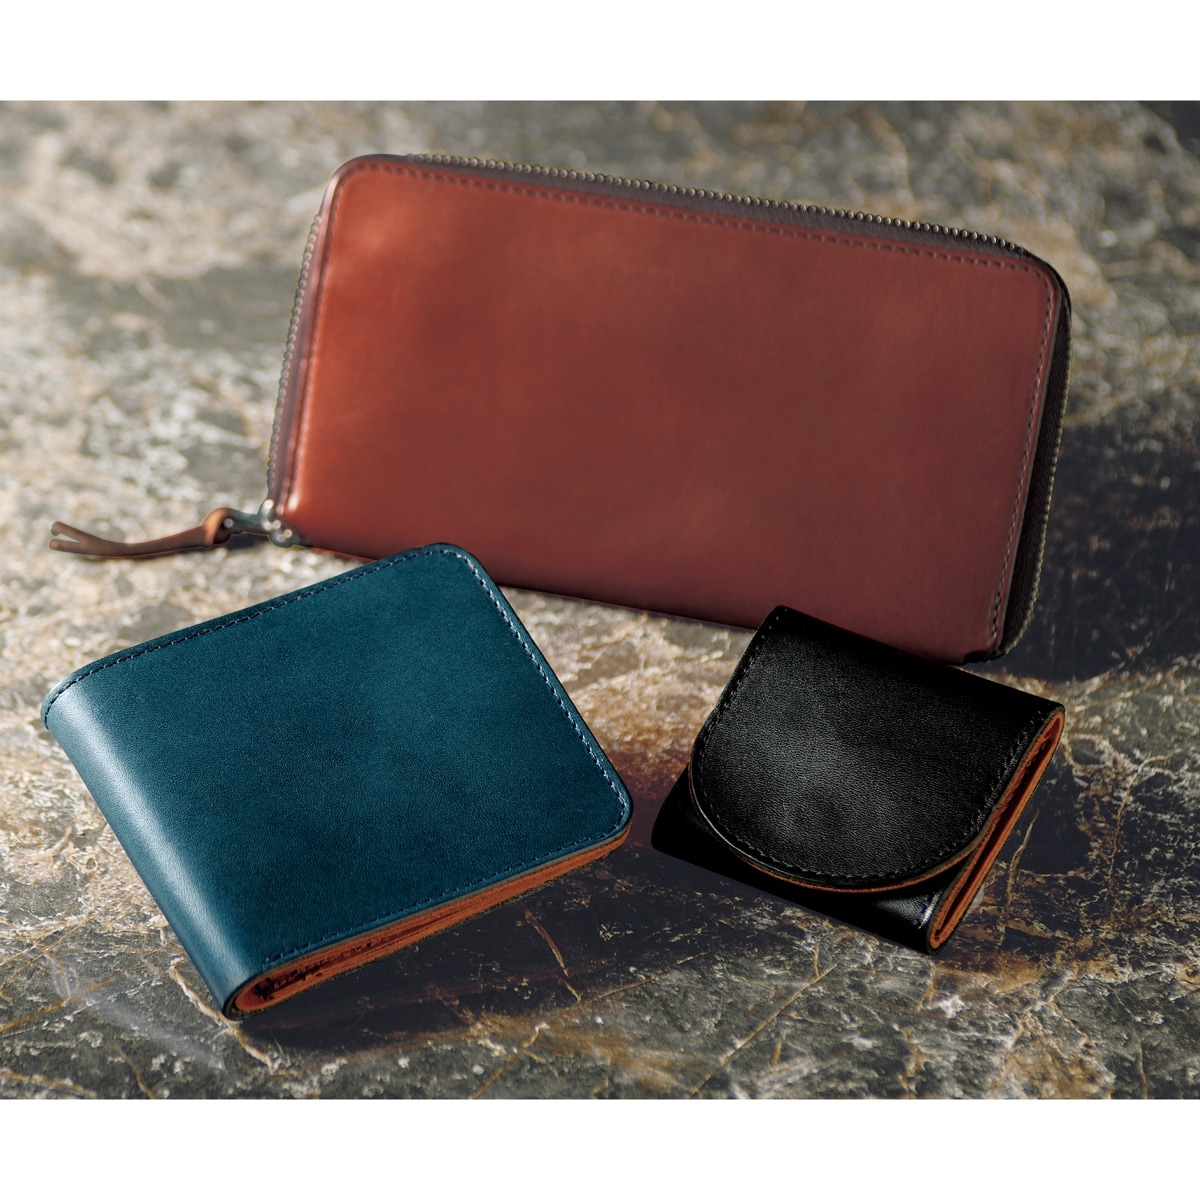 風合いある革の日本製栃木レザー財布 - ファッション通販ならセシール(cecile)